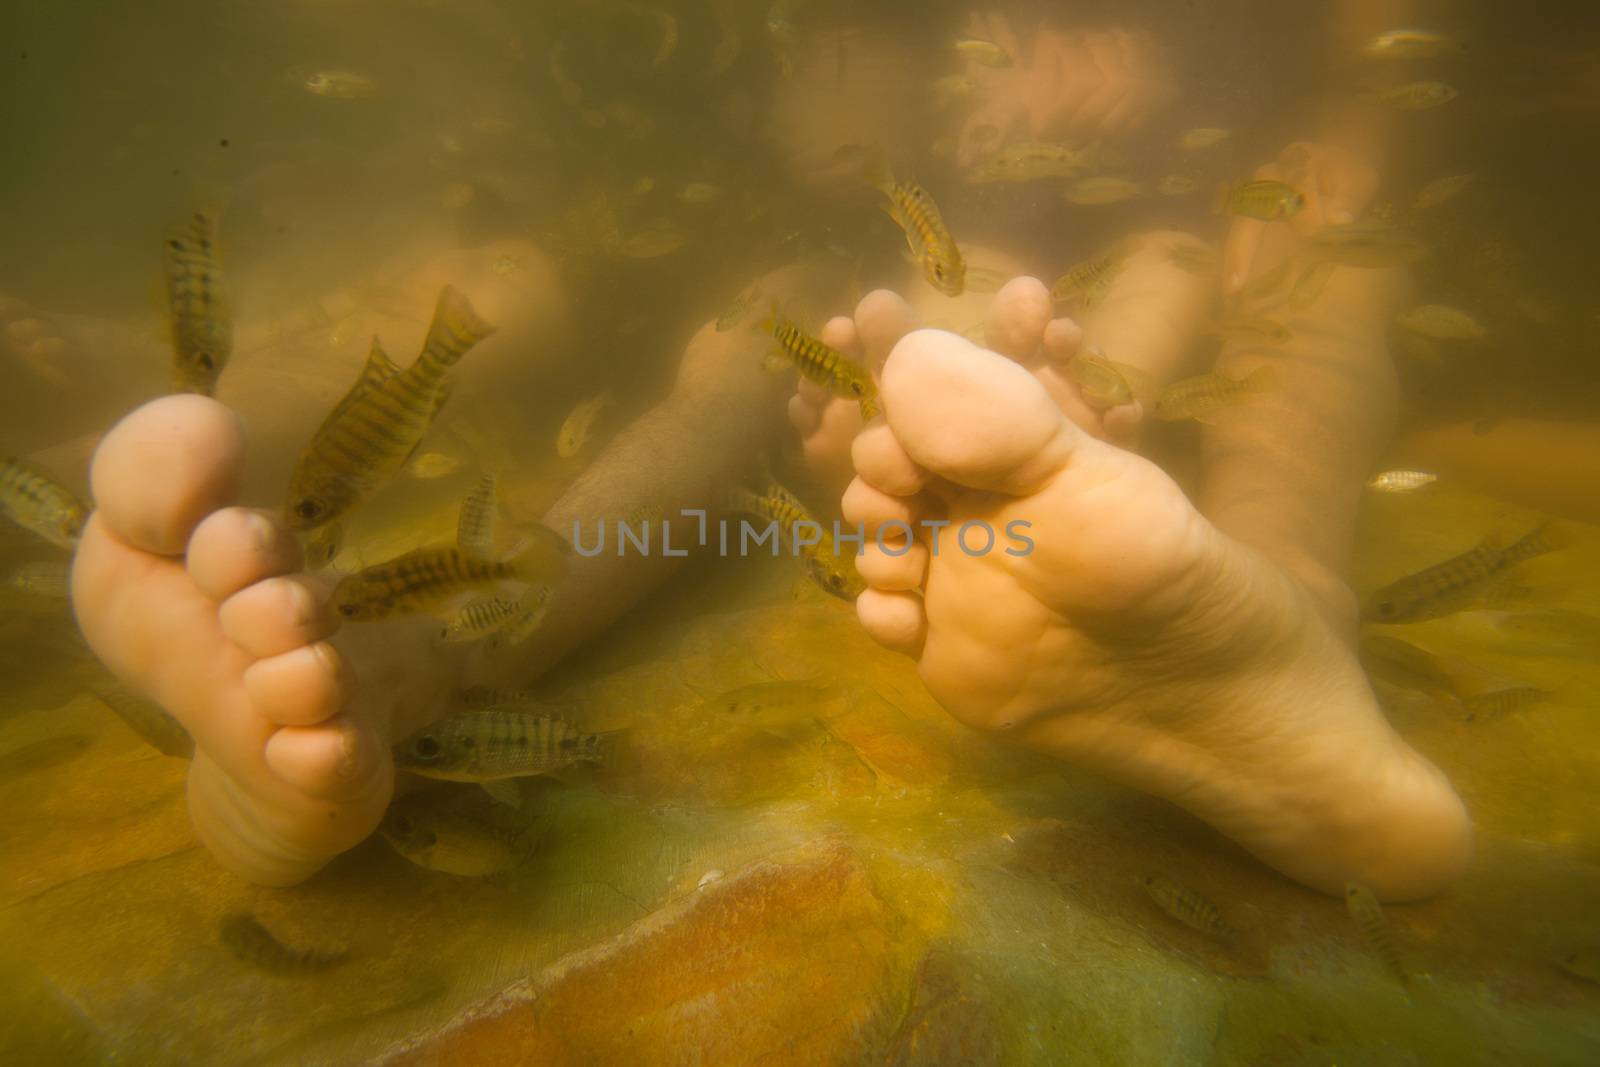 Fish spa feet pedicure skin care treatment